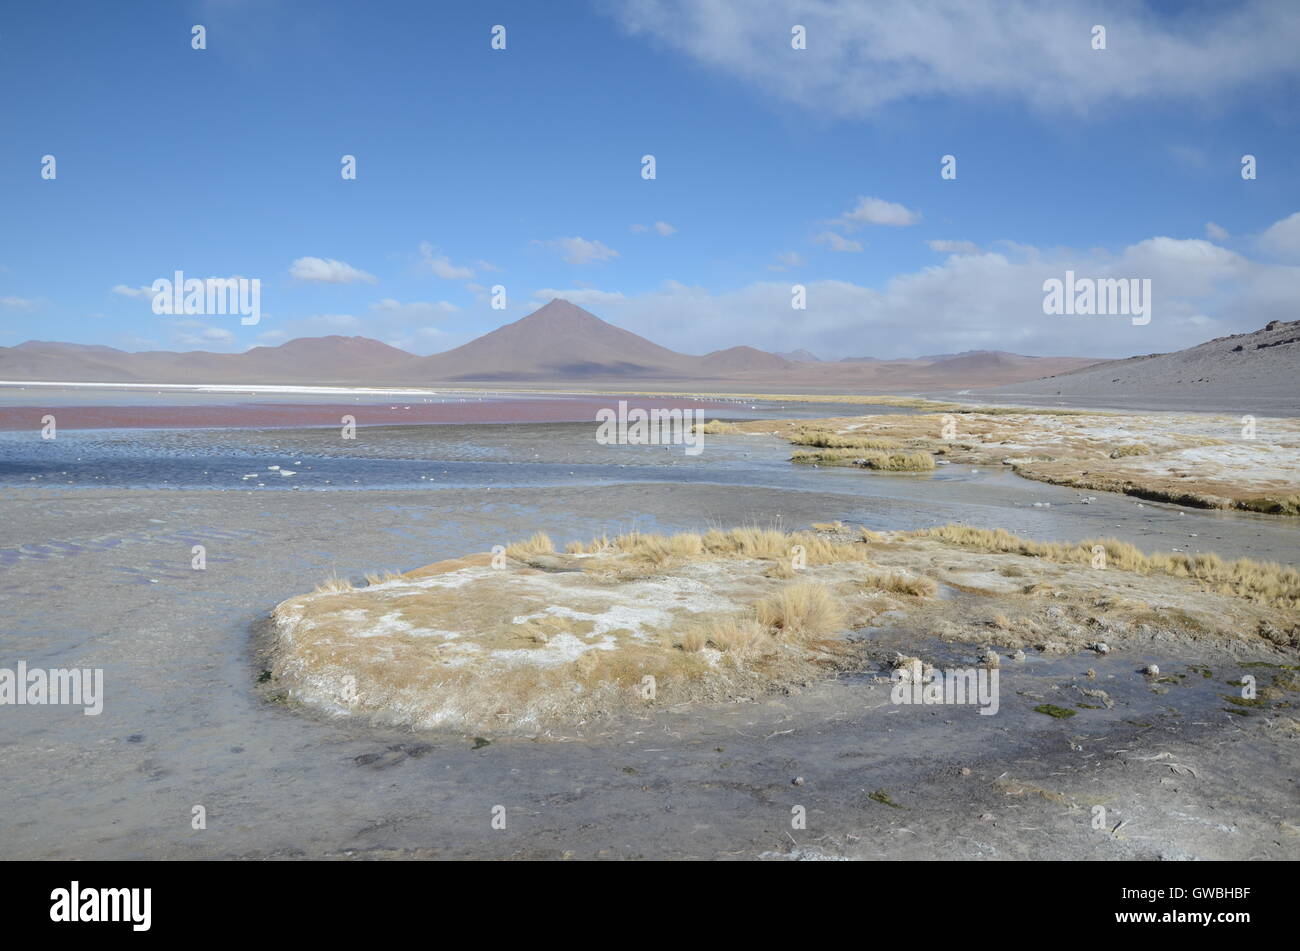 Altiplano lagoon and mountains Stock Photo